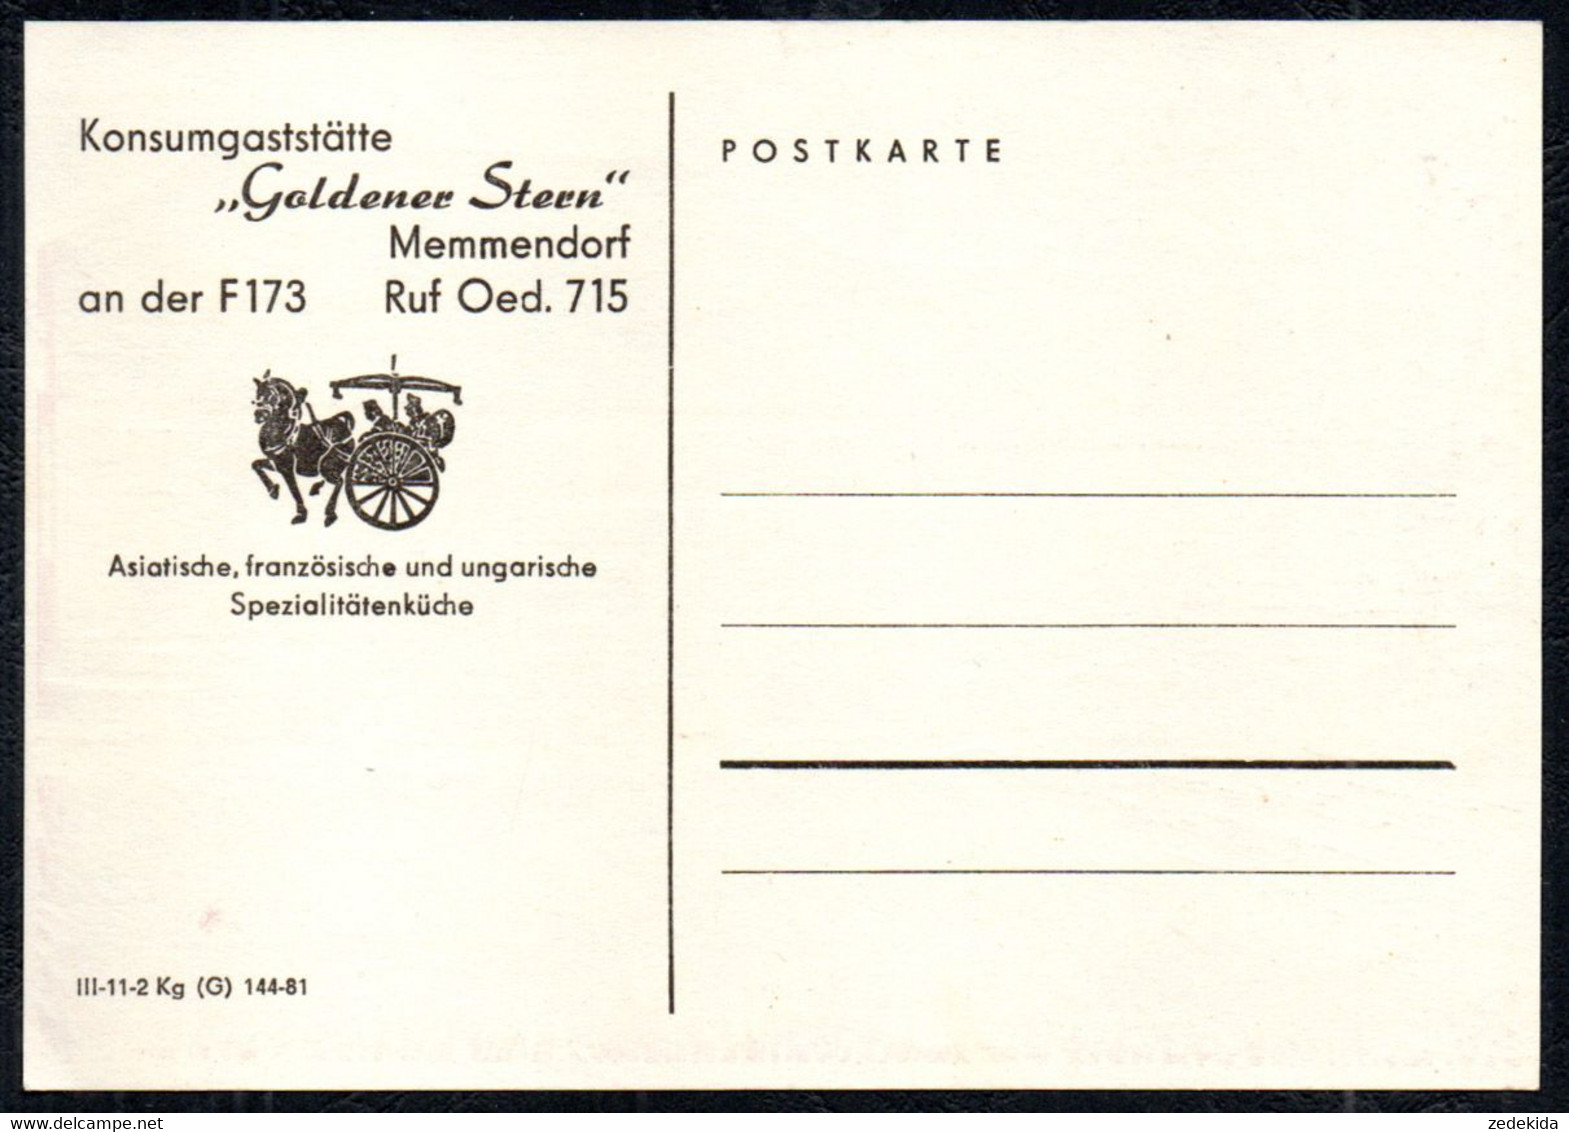 G1295 - TOP Memmendorf - Konsum Gaststätte Goldener Stern - Verlag DDR - Oederan